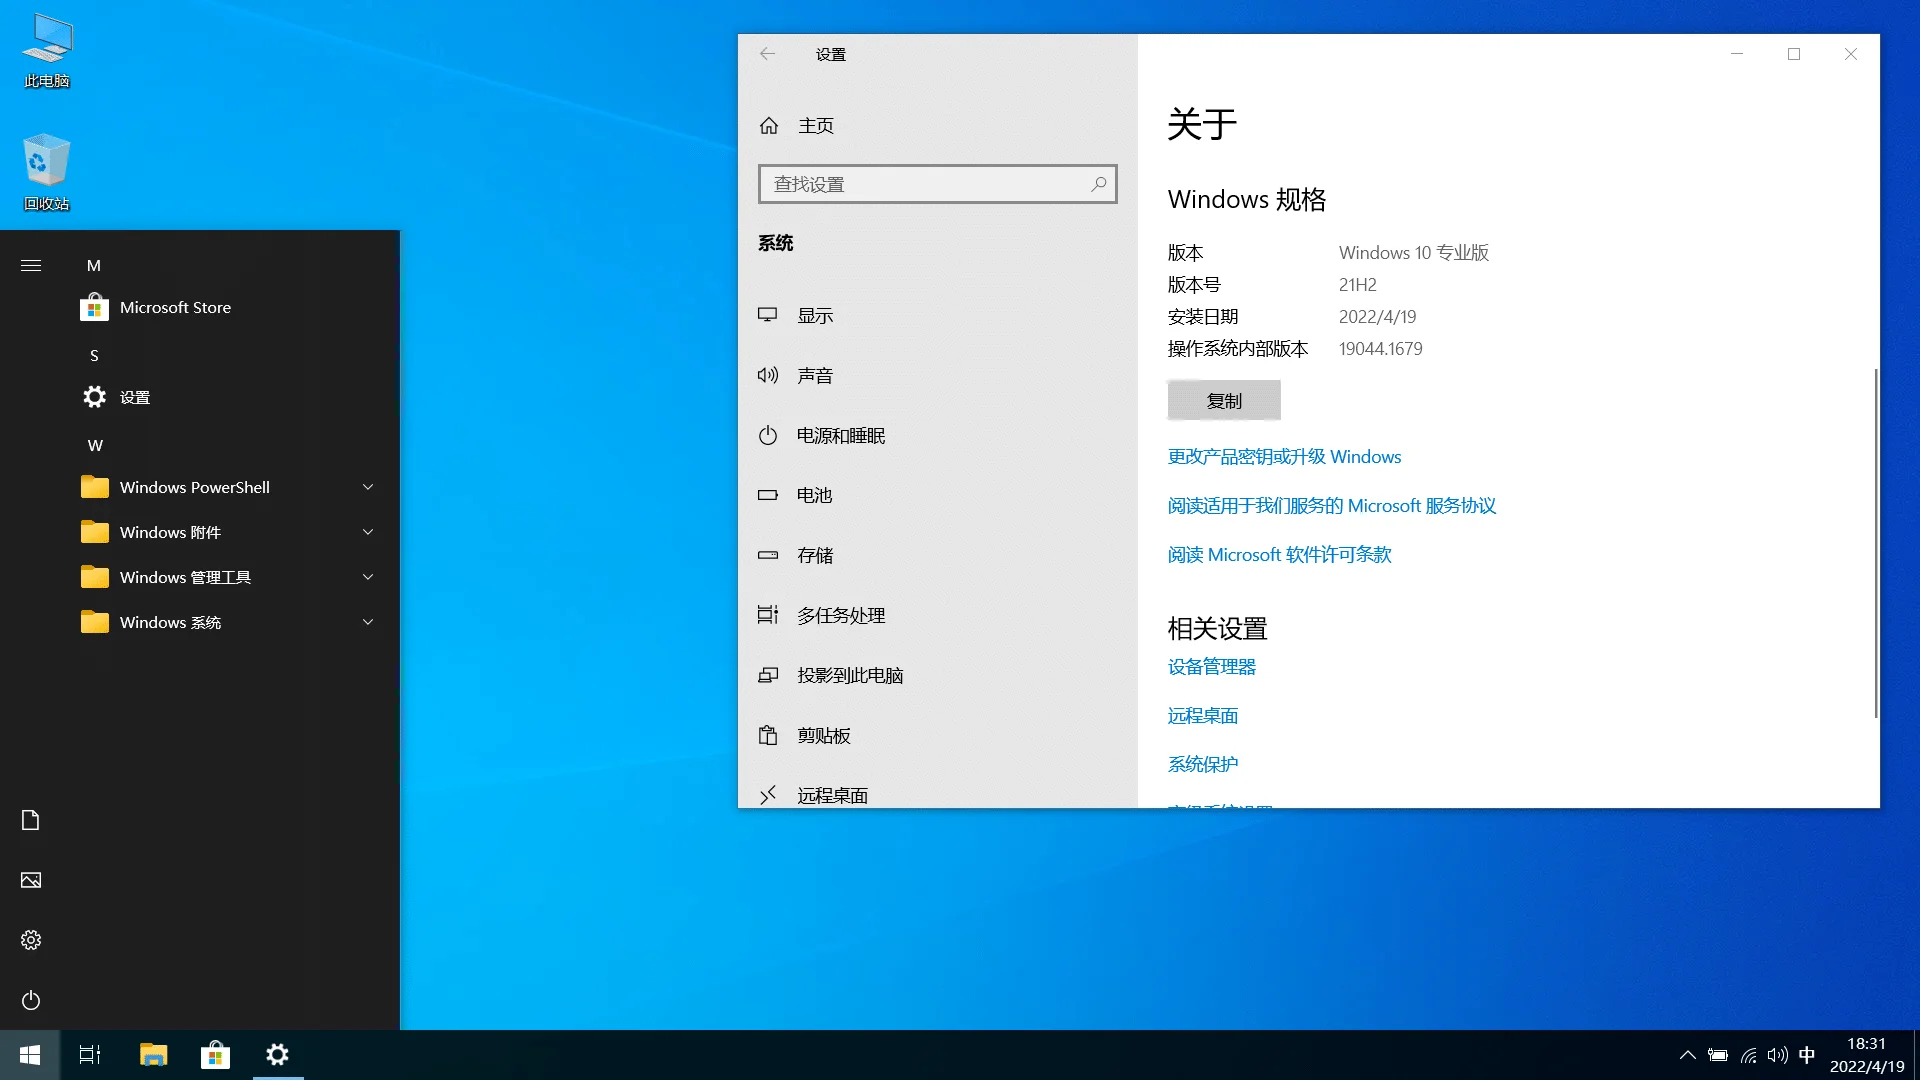 【果核】Windows 10 Pro 21H2(19044.1706) 优化精简版